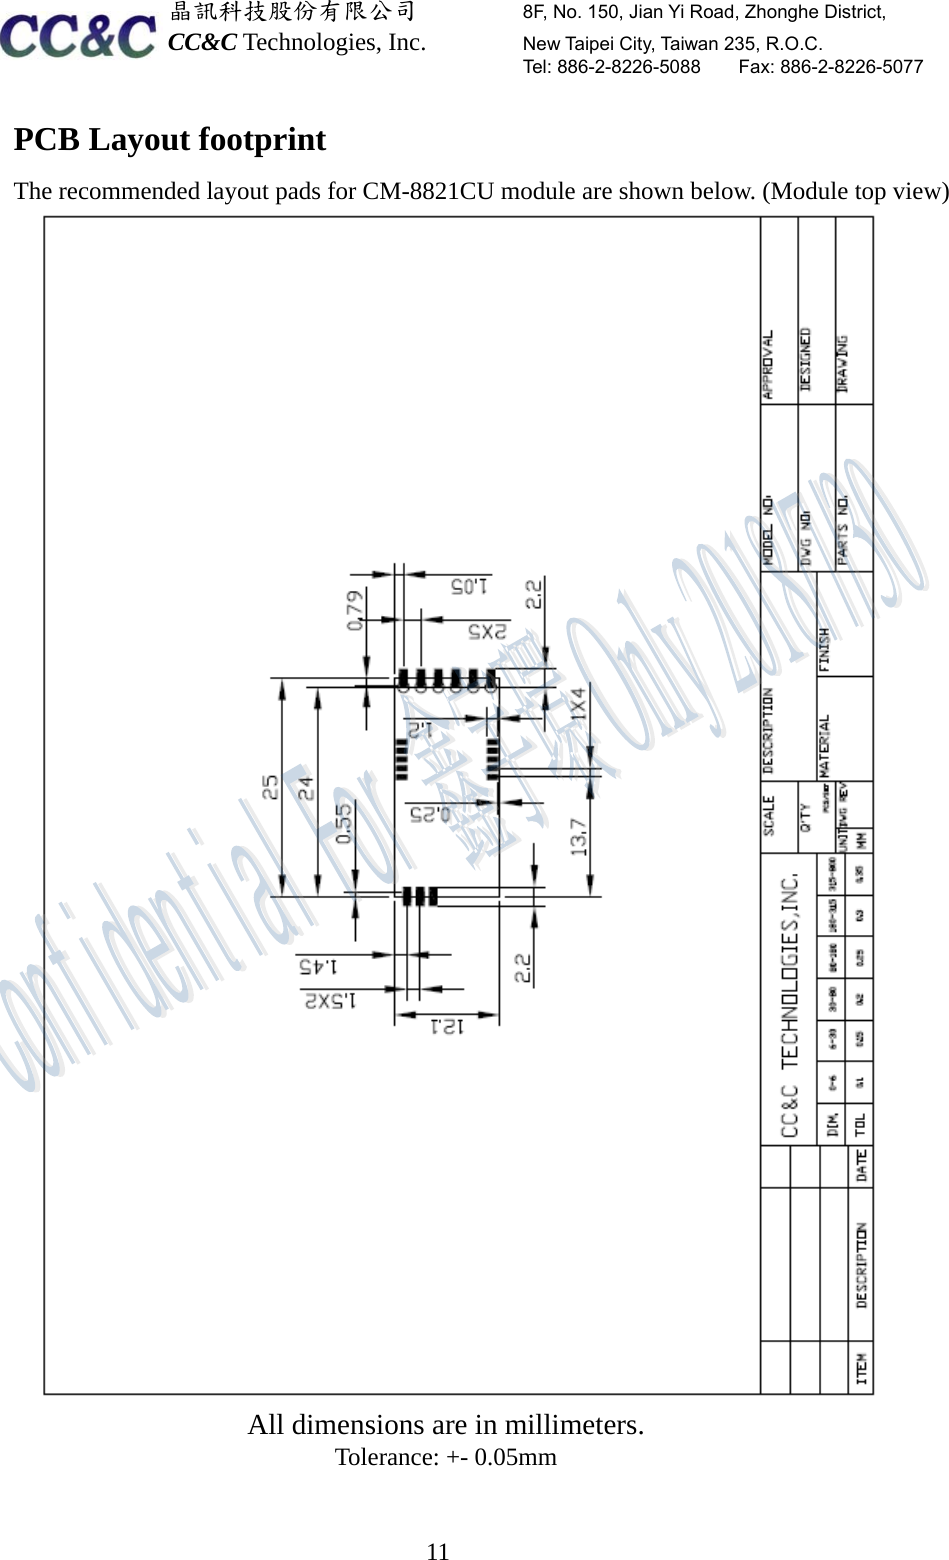  晶訊科技股份有限公司         8F, No. 150, Jian Yi Road, Zhonghe District,   CC&amp;C Technologies, Inc.        New Taipei City, Taiwan 235, R.O.C.   Tel: 886-2-8226-5088    Fax: 886-2-8226-5077  11PCB Layout footprint The recommended layout pads for CM-8821CU module are shown below. (Module top view)  All dimensions are in millimeters. Tolerance: +- 0.05mm   